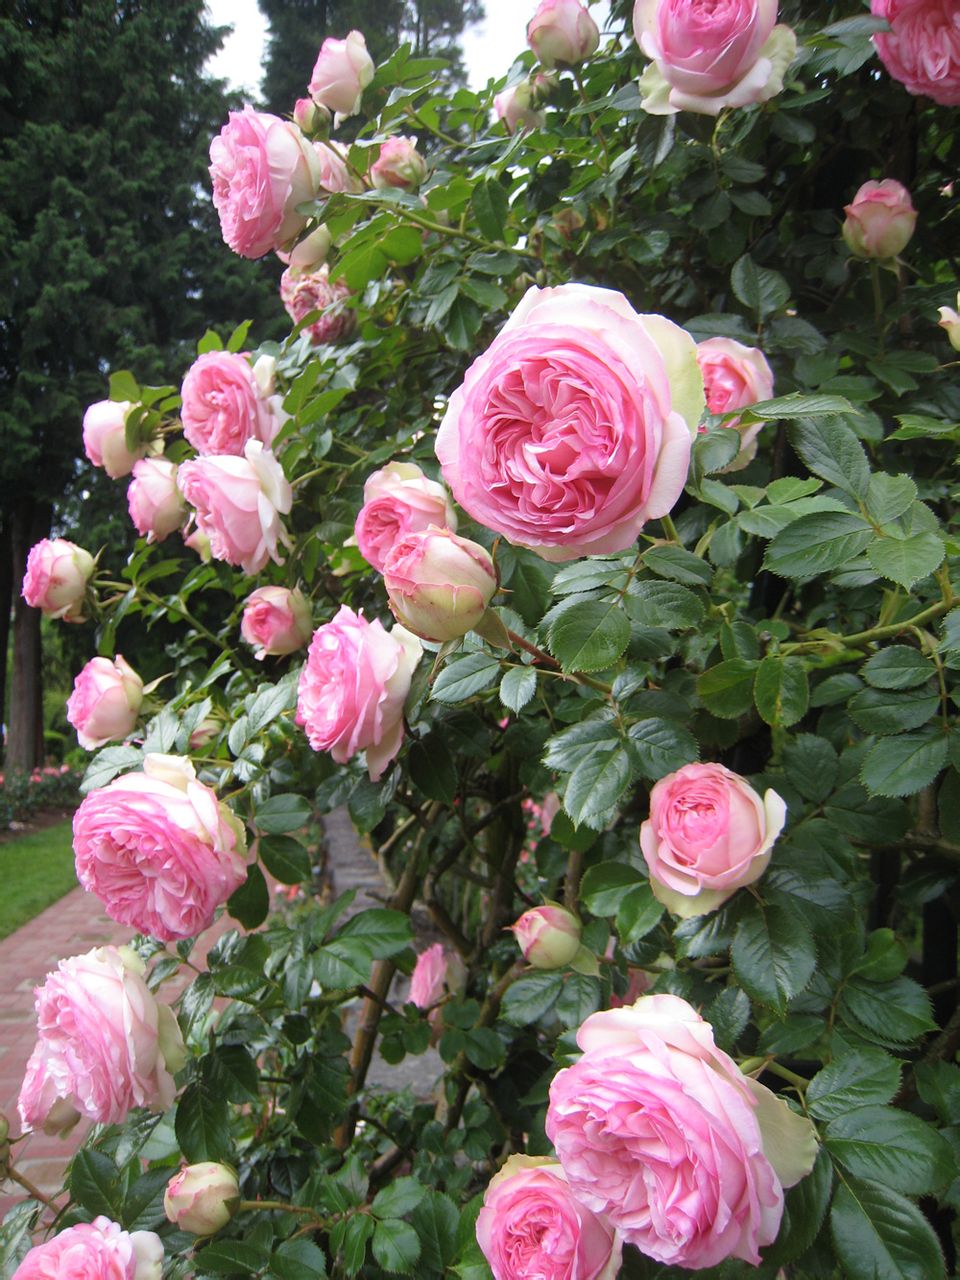 龙沙宝石（Rose Eden）是蔷薇属的一种植物，被世界的人民们所喜爱的龙沙宝石。以十六世纪被称为“蔷薇诗人”的Pierre de Ronsard的名字命名的。